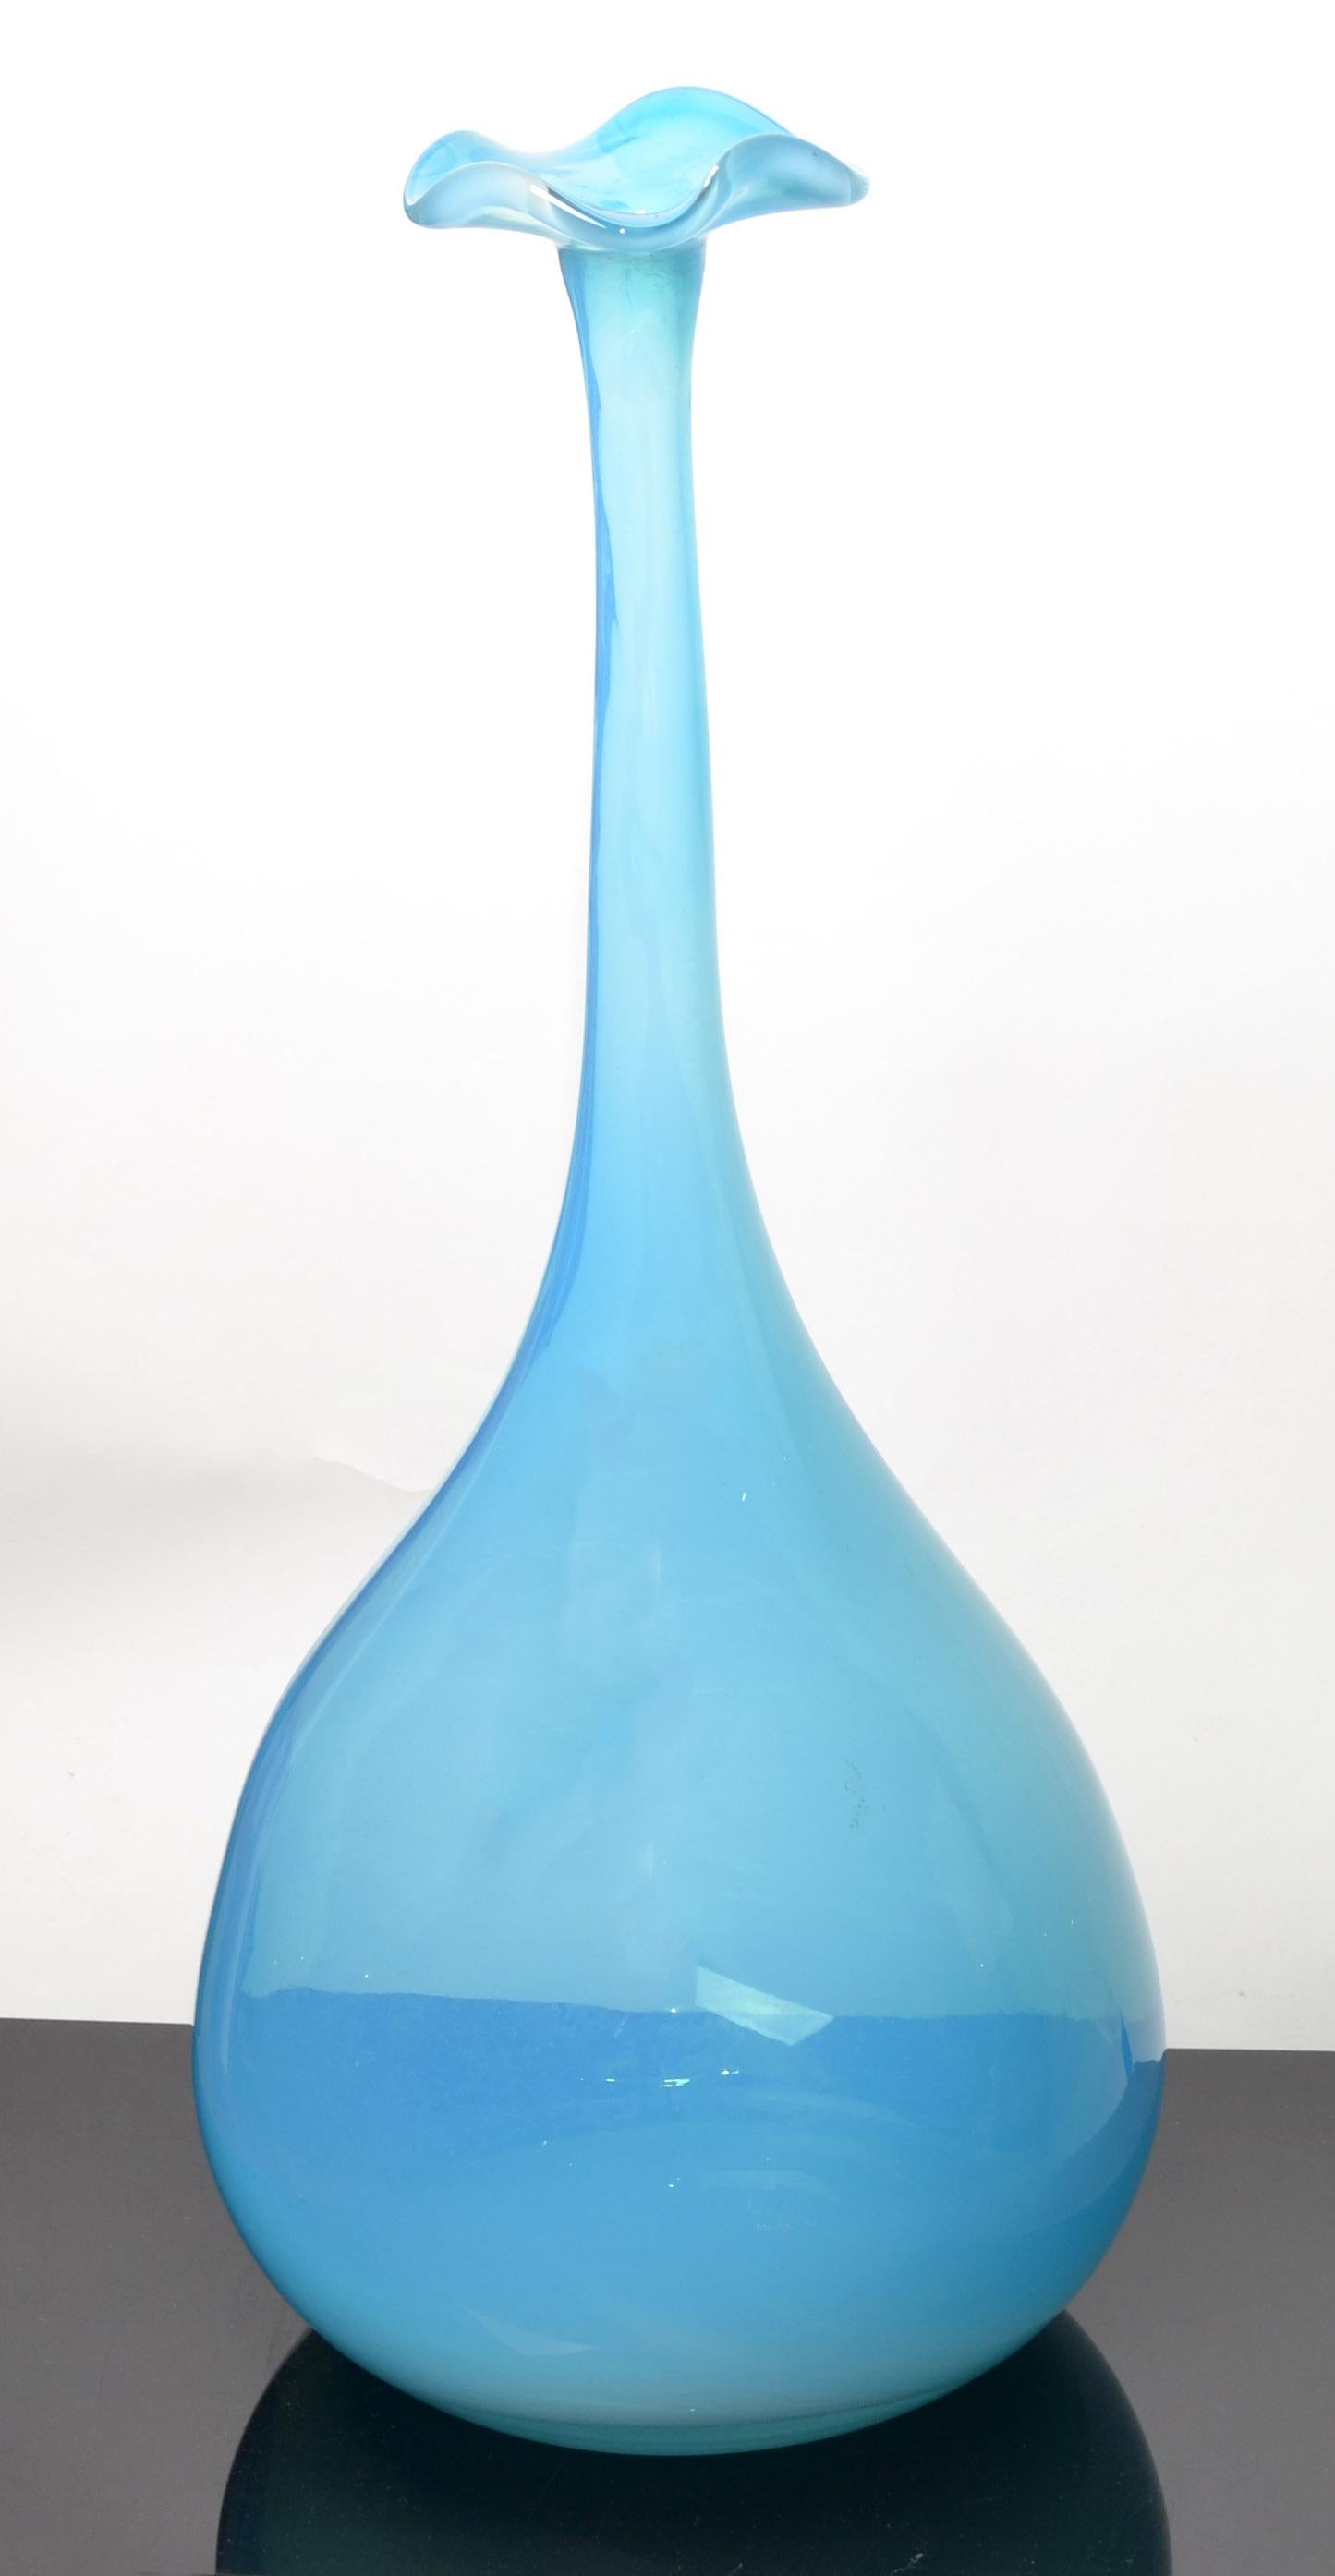 Hand-Crafted Kjell Engman Kosta Boda Style Blue Crystal Bud Art Vase Scandinavian Modern 1990 For Sale